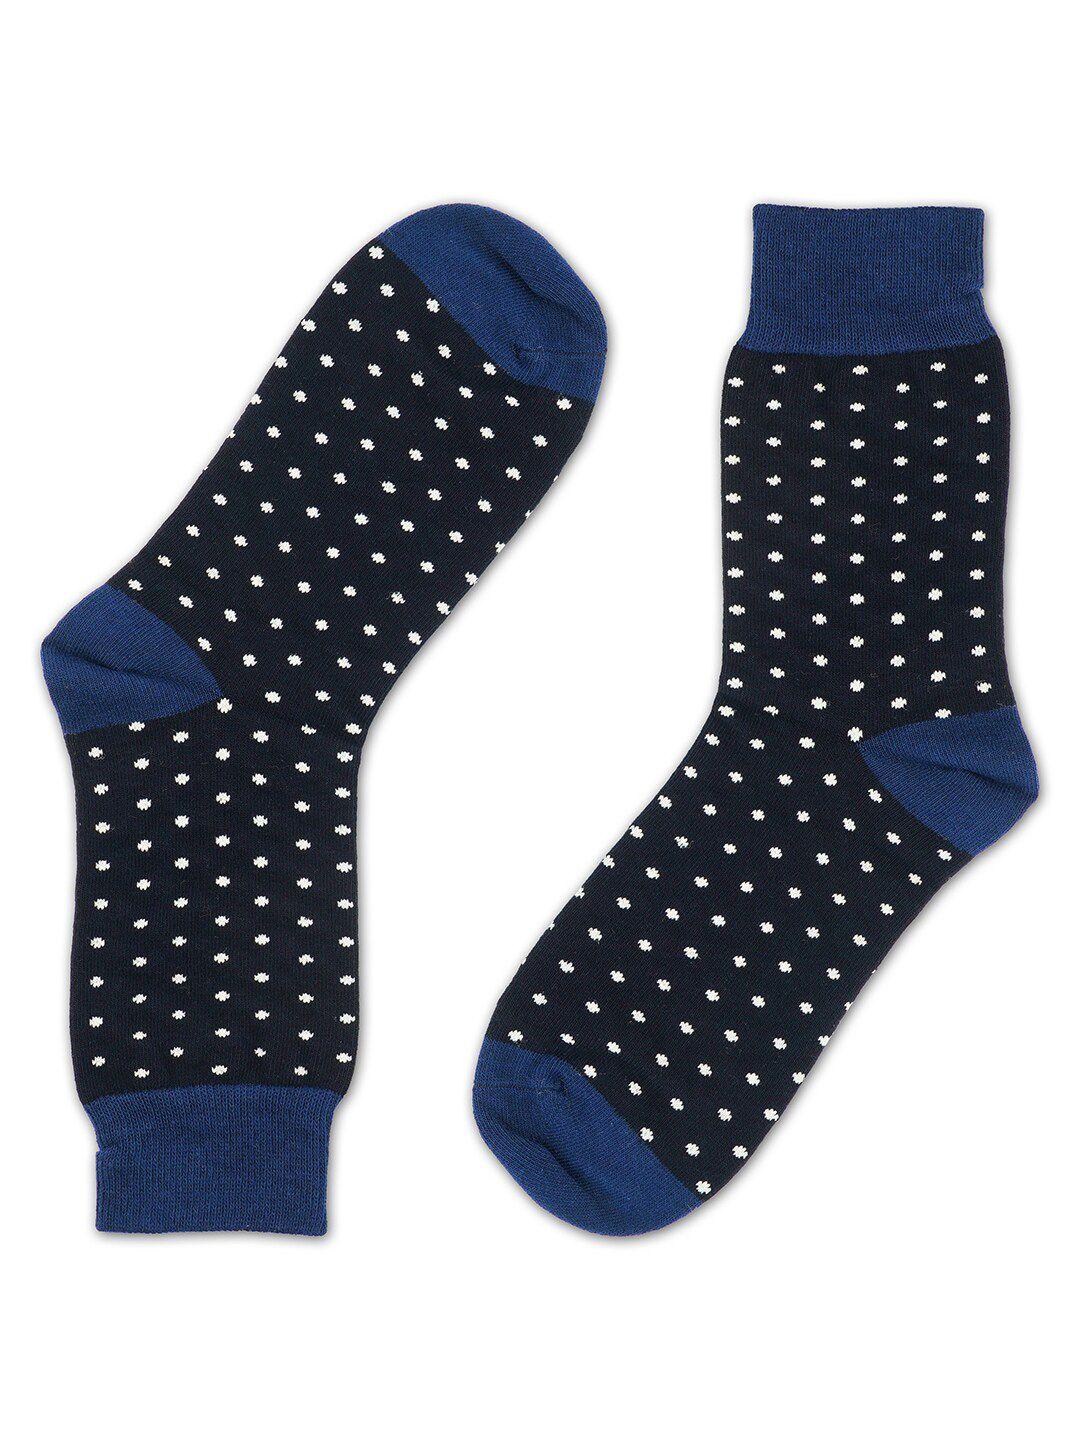 toffcraft men black & blue patterned above ankle length crew socks